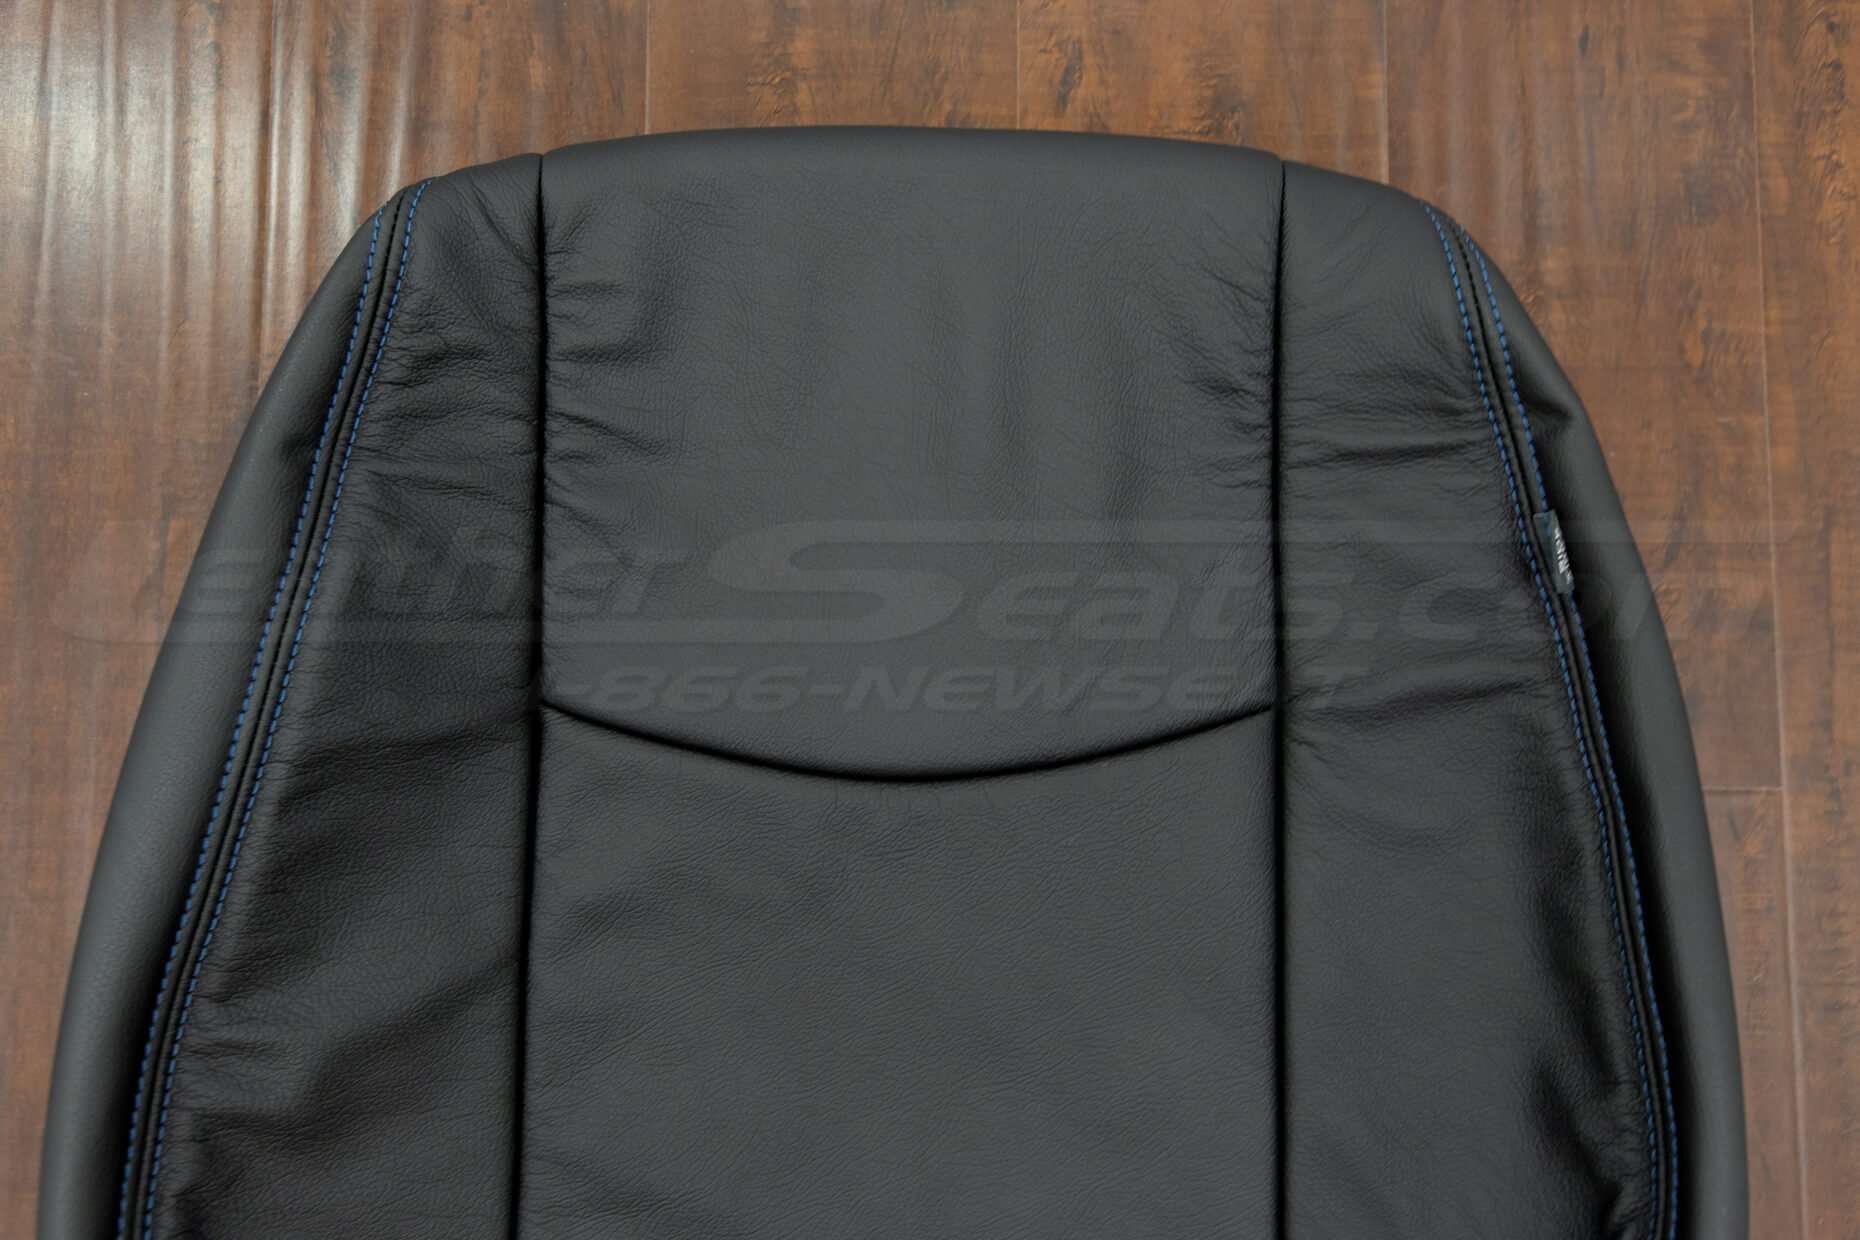 2013-2017 Nissan Leaf Upholstery Kit - Black - Upper half of front backrest